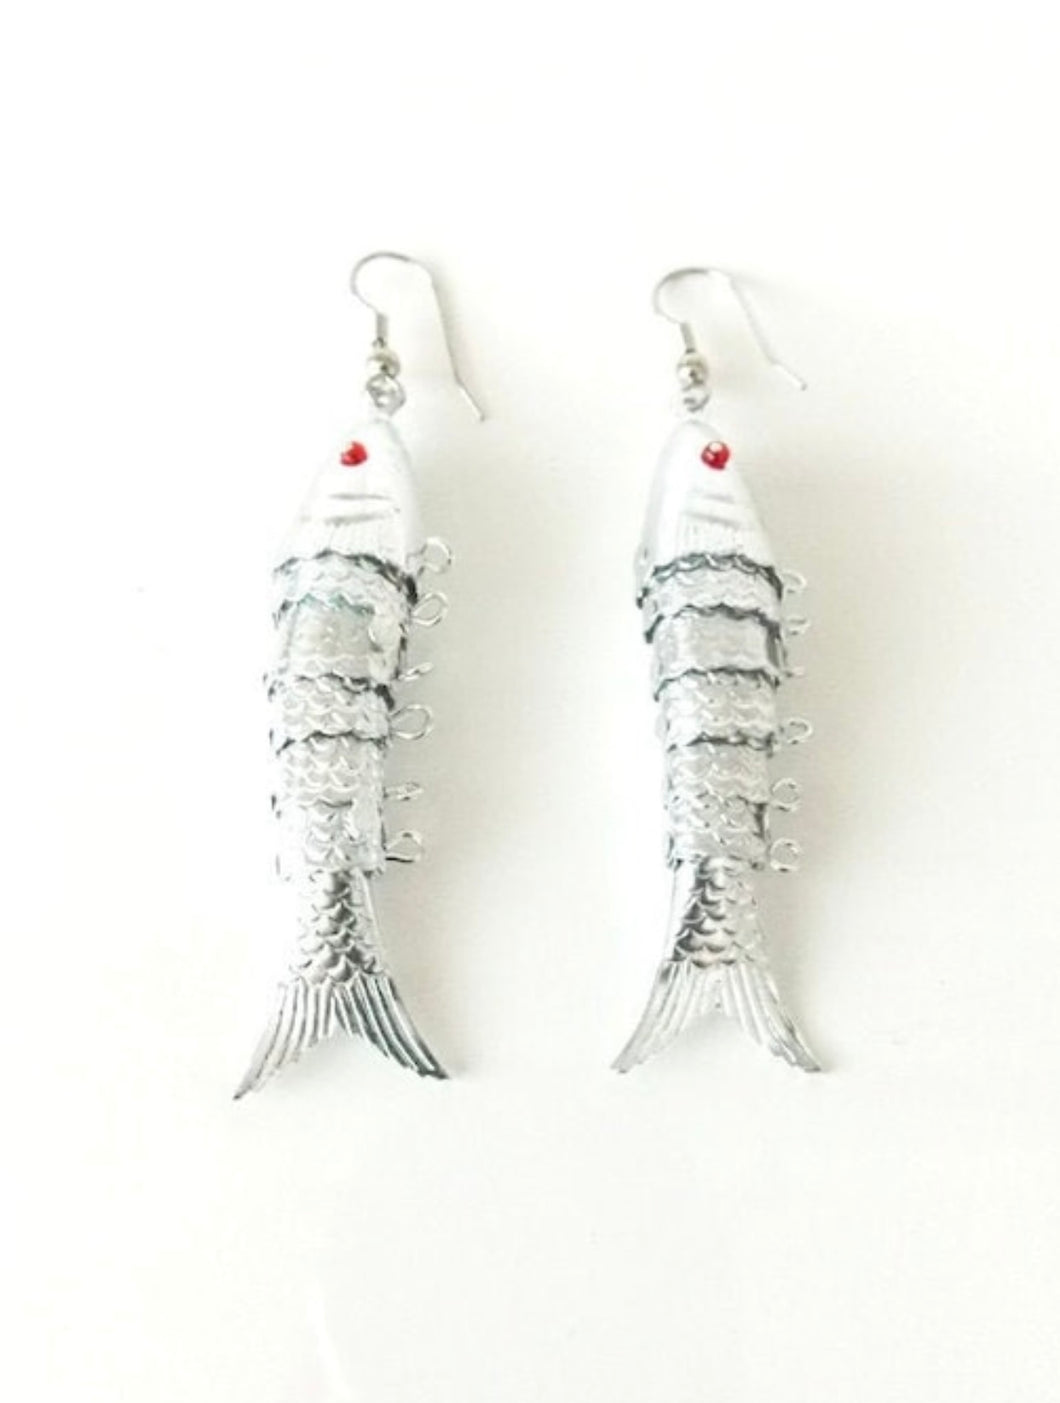 Vintage Silver Fish Earrings